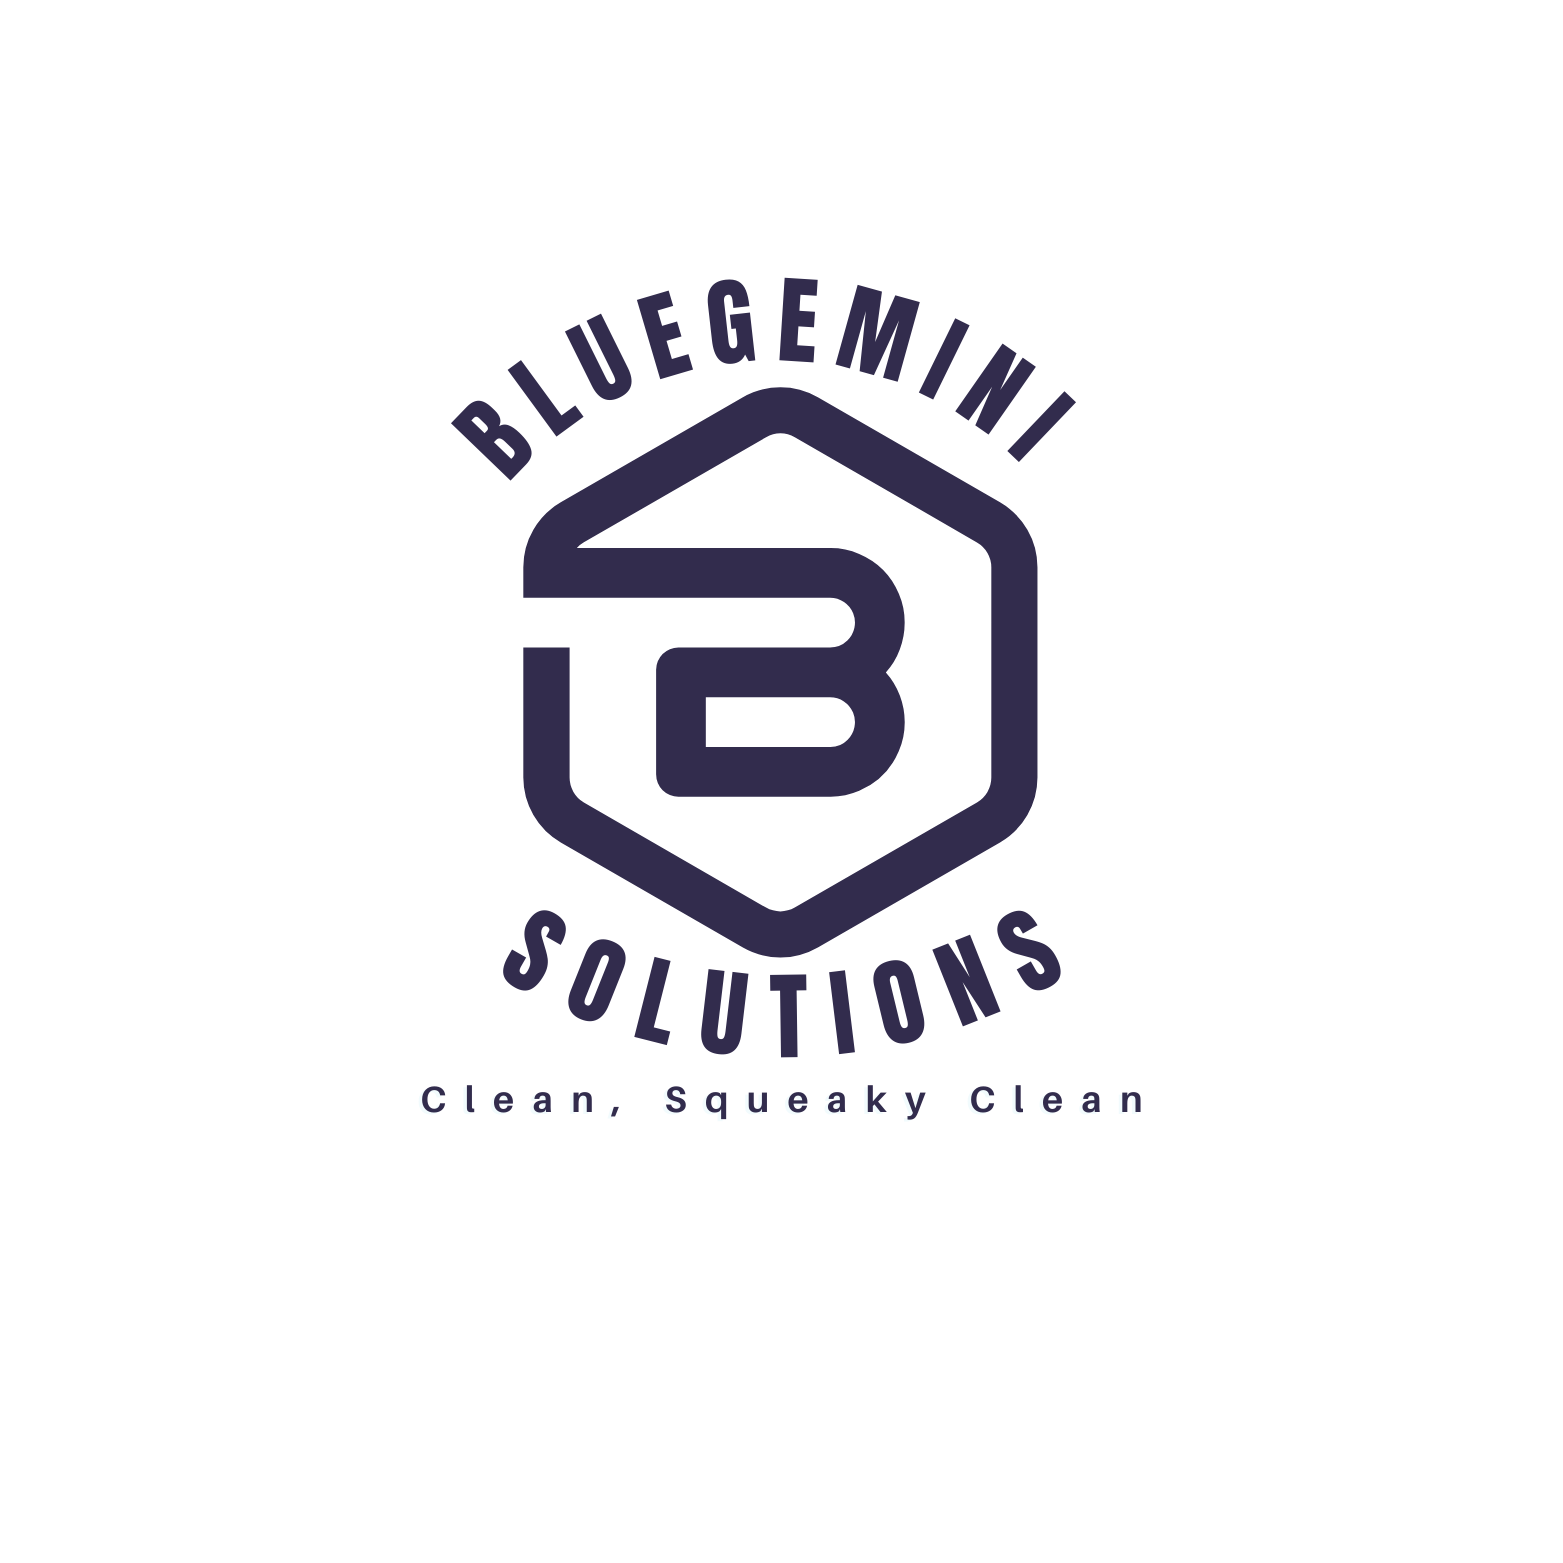 BlueGemini Solutions